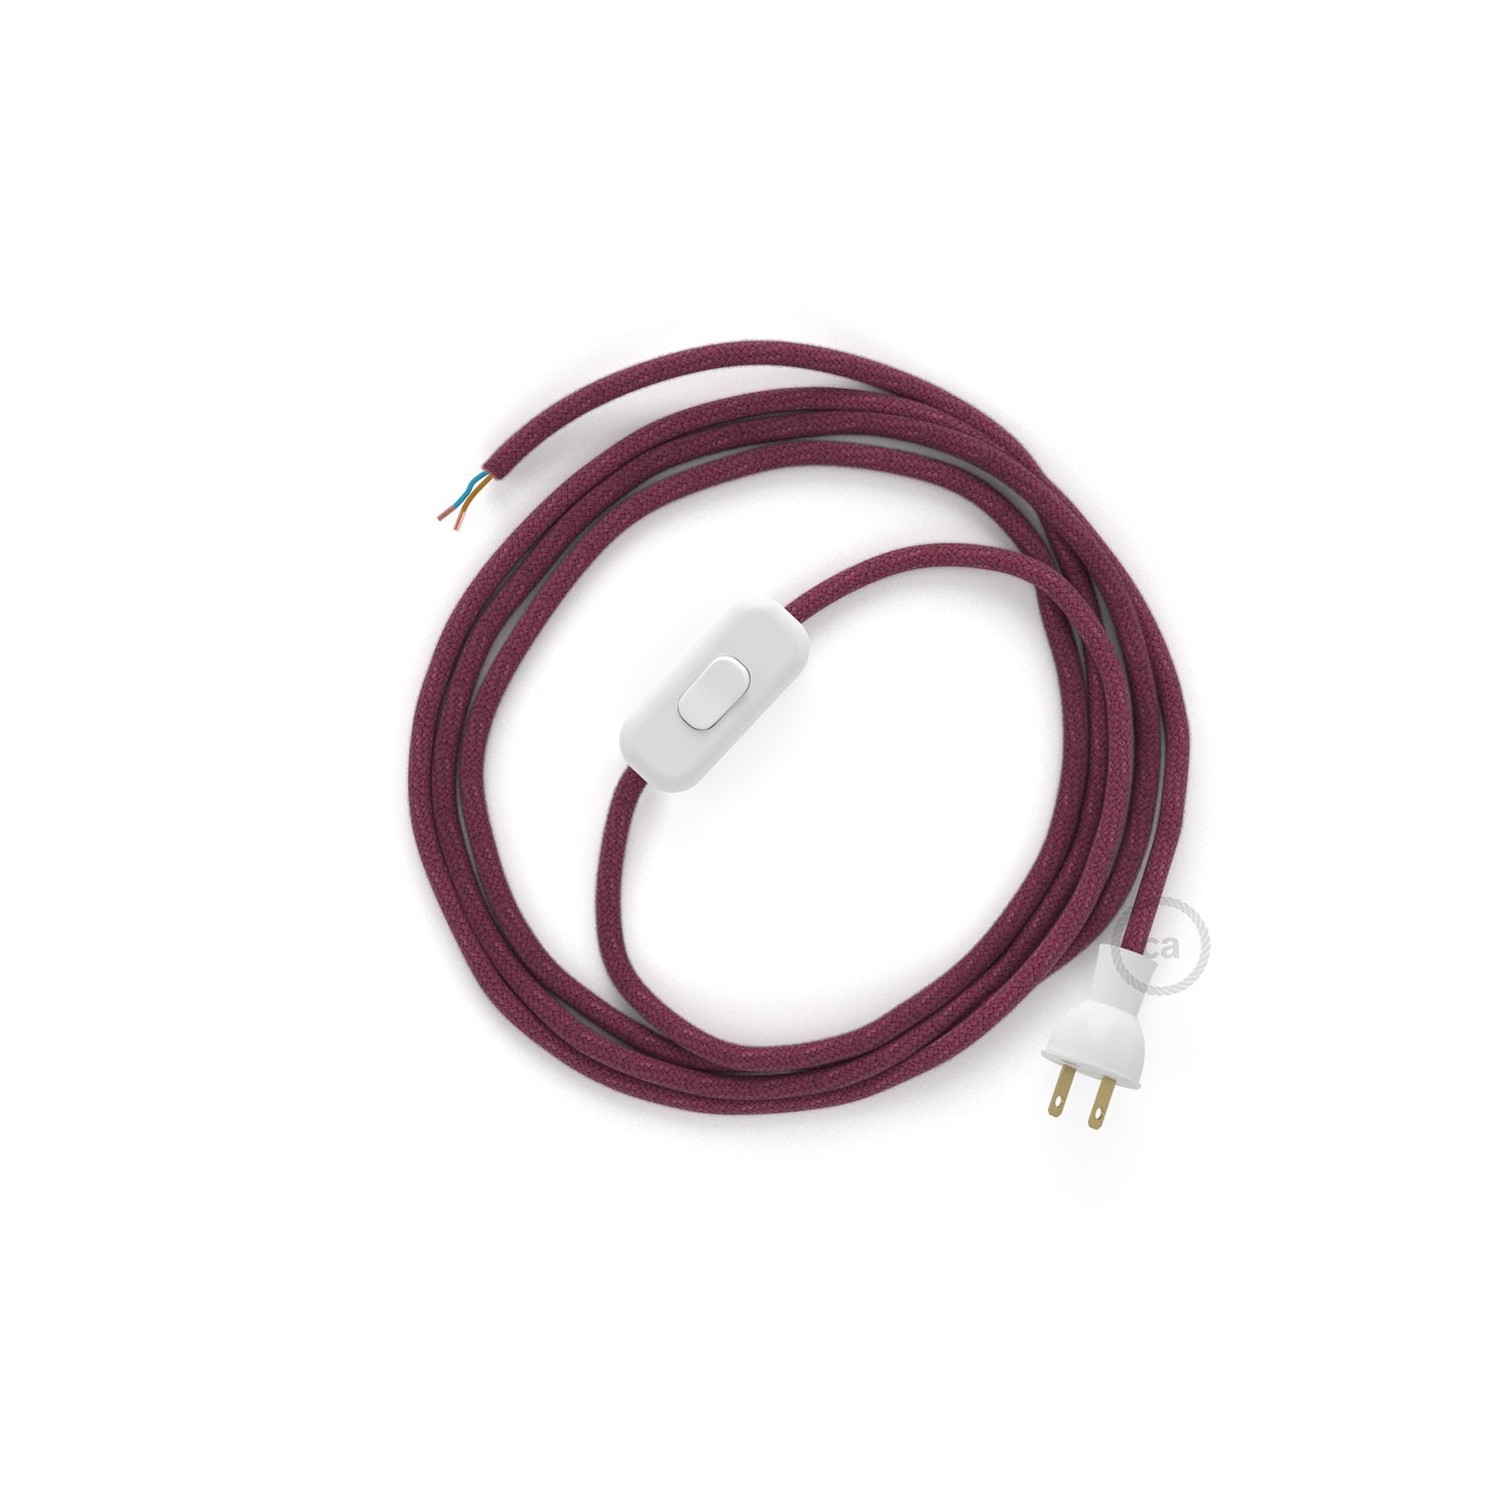 Cableado para lámpara de mesa, cable RC32 Algodón Rojo Violeta 1,8 m. Elige el color de la clavija y del interruptor!